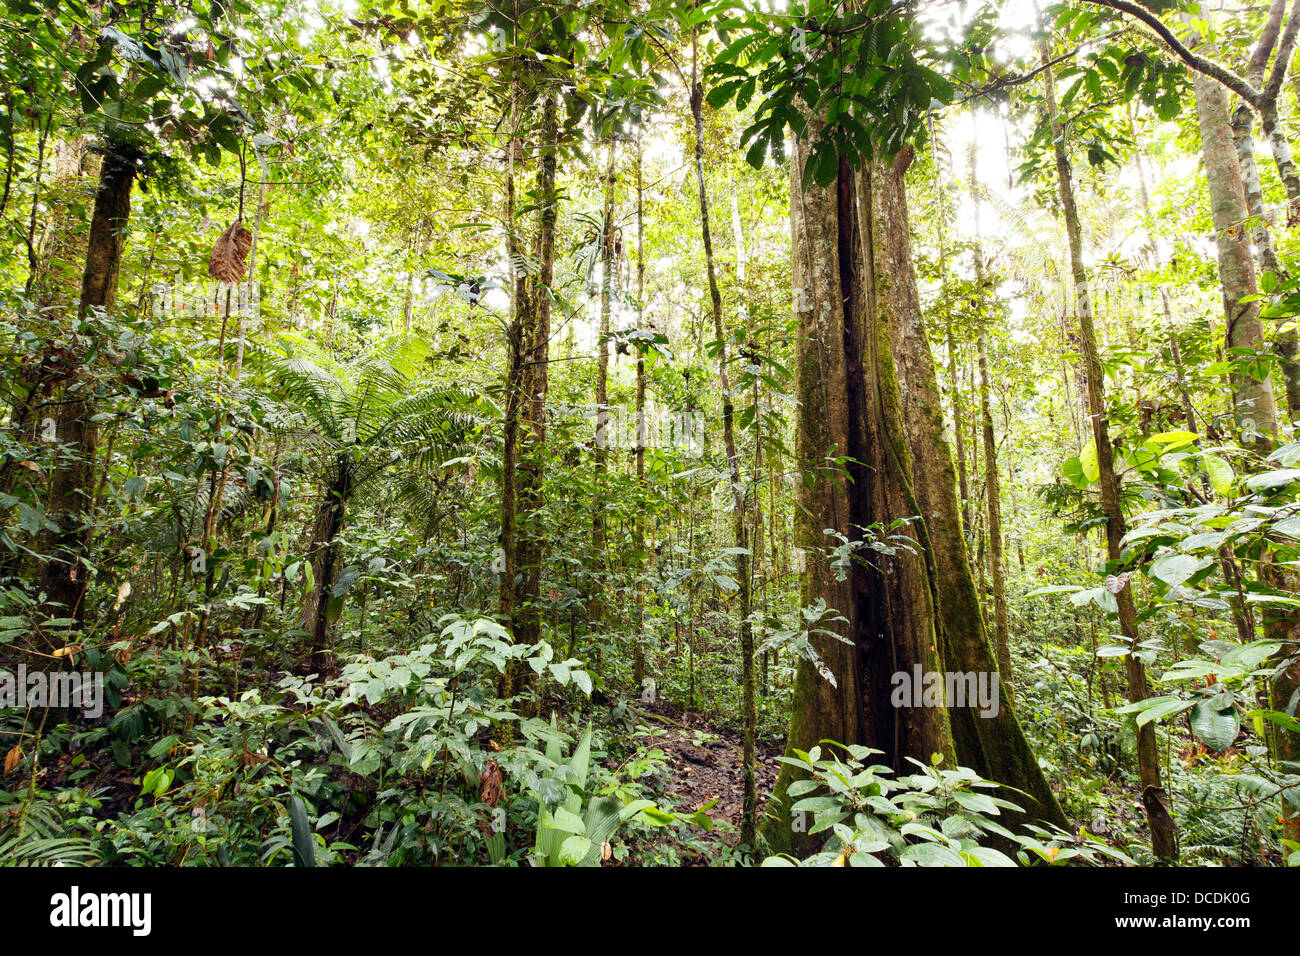 Arbre géant renforcé avec racines et tronc cannelé, Equateur Banque D'Images